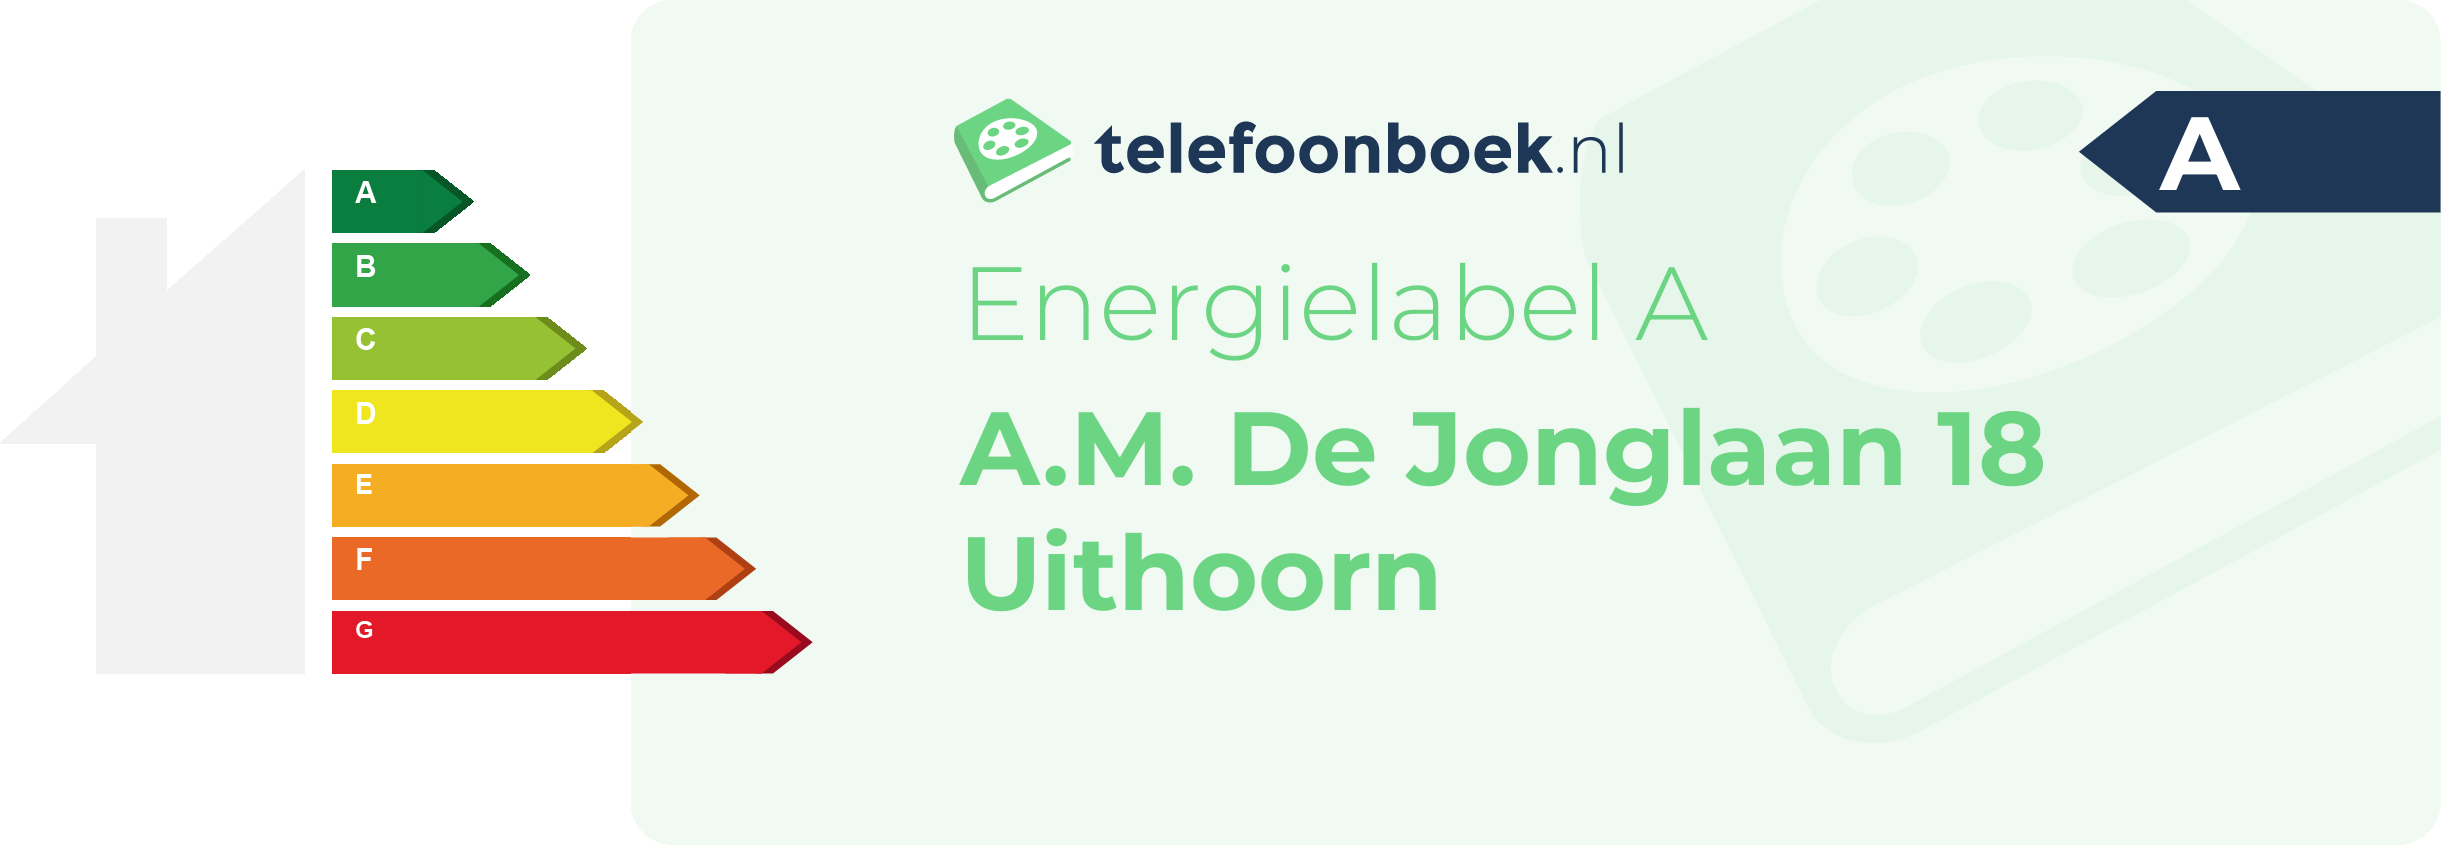 Energielabel A.M. De Jonglaan 18 Uithoorn